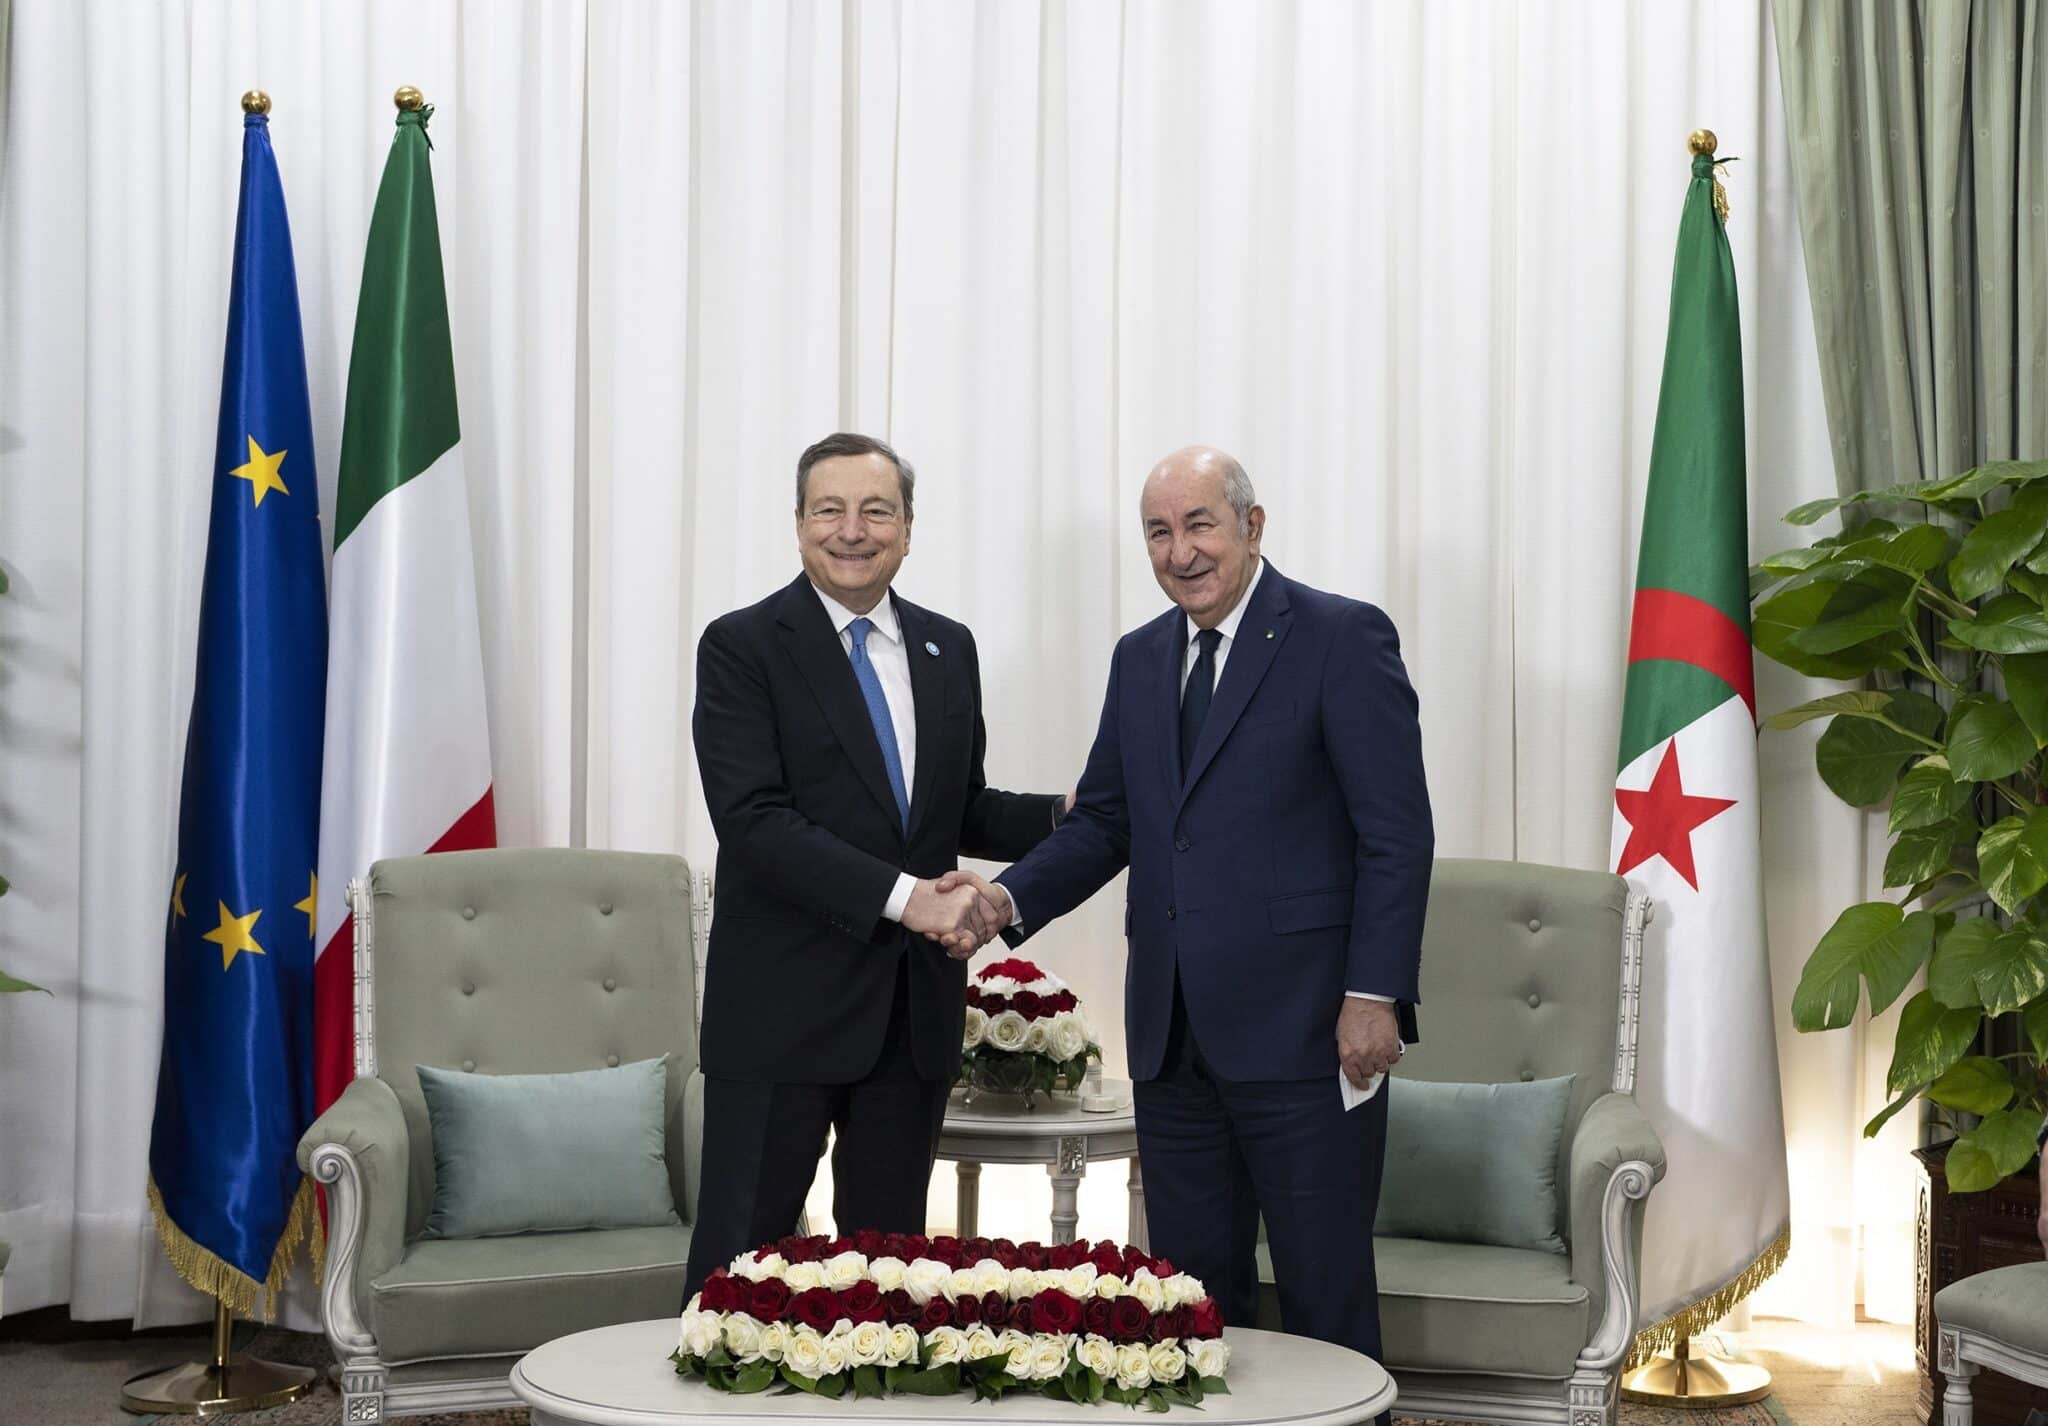 Los primeros ministros de Italia y Argelia en un encuentro reciente